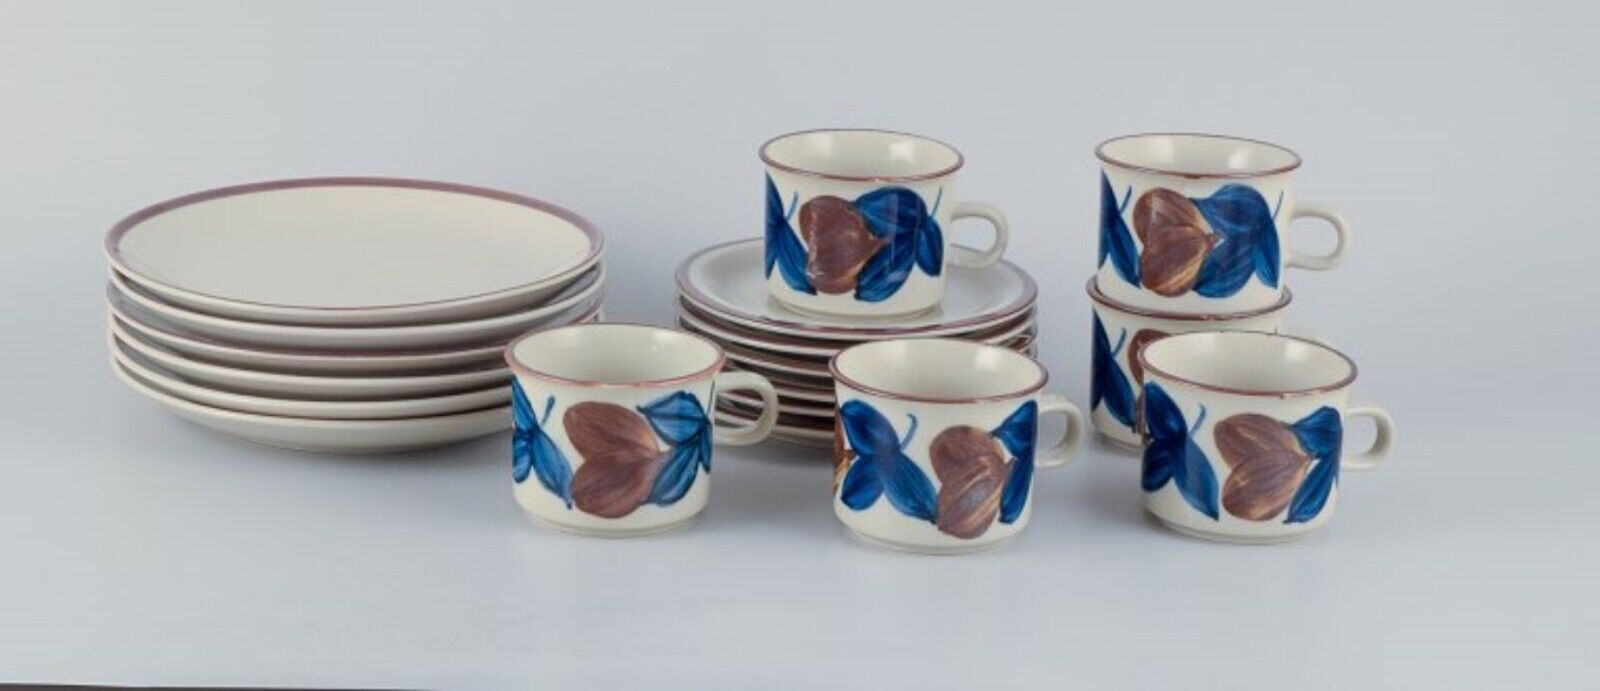 Arabia, Finland, six-person retro coffee set in stoneware. 1970s